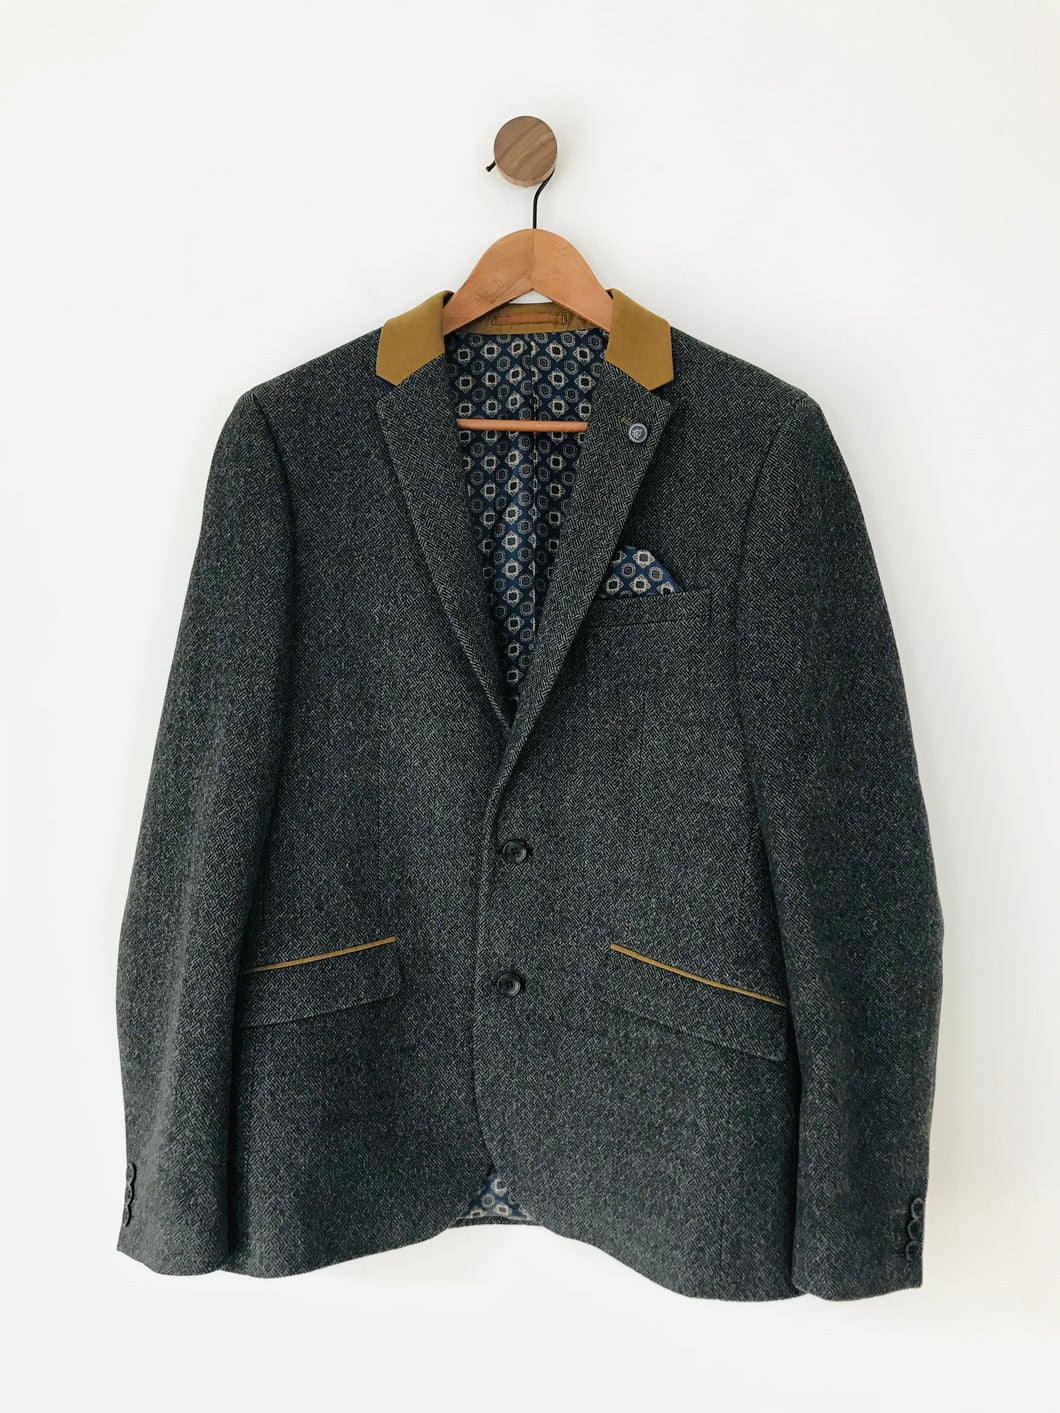 B & G Men’s Slim Fit Tweed Blazer Jacket | 40R | Grey